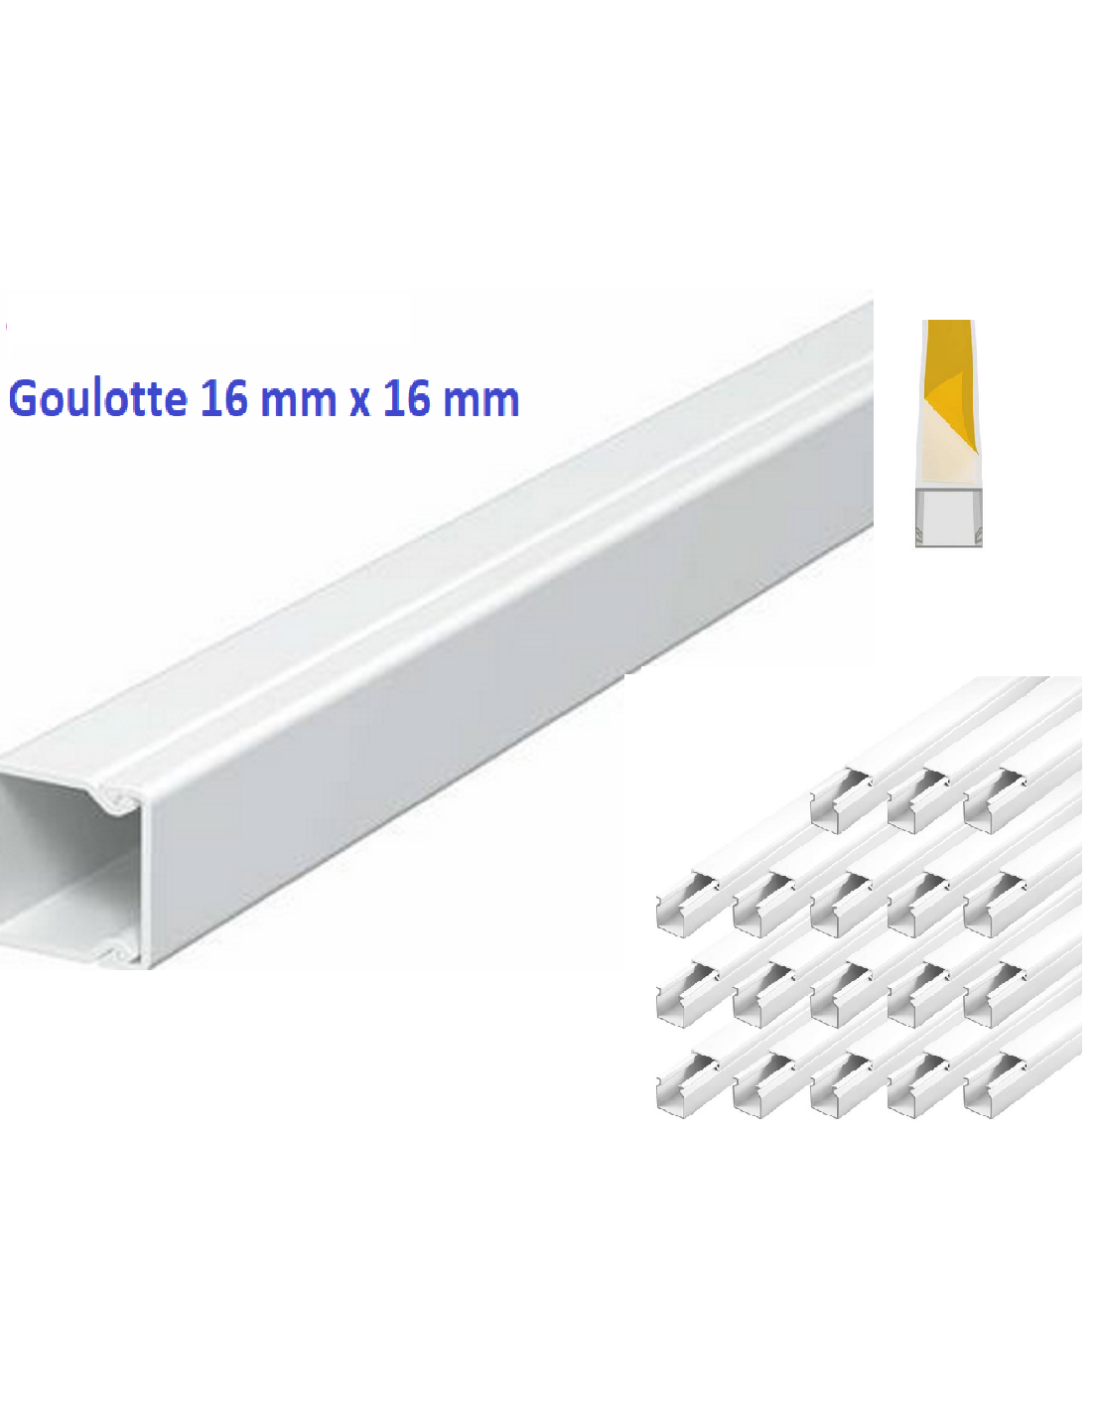 18 m Goulotte moulure électrique PVC 16 mm x 16 mm Blanc -Autocollante -  longueur 1 m ( soit 2,08 € ttc le m)